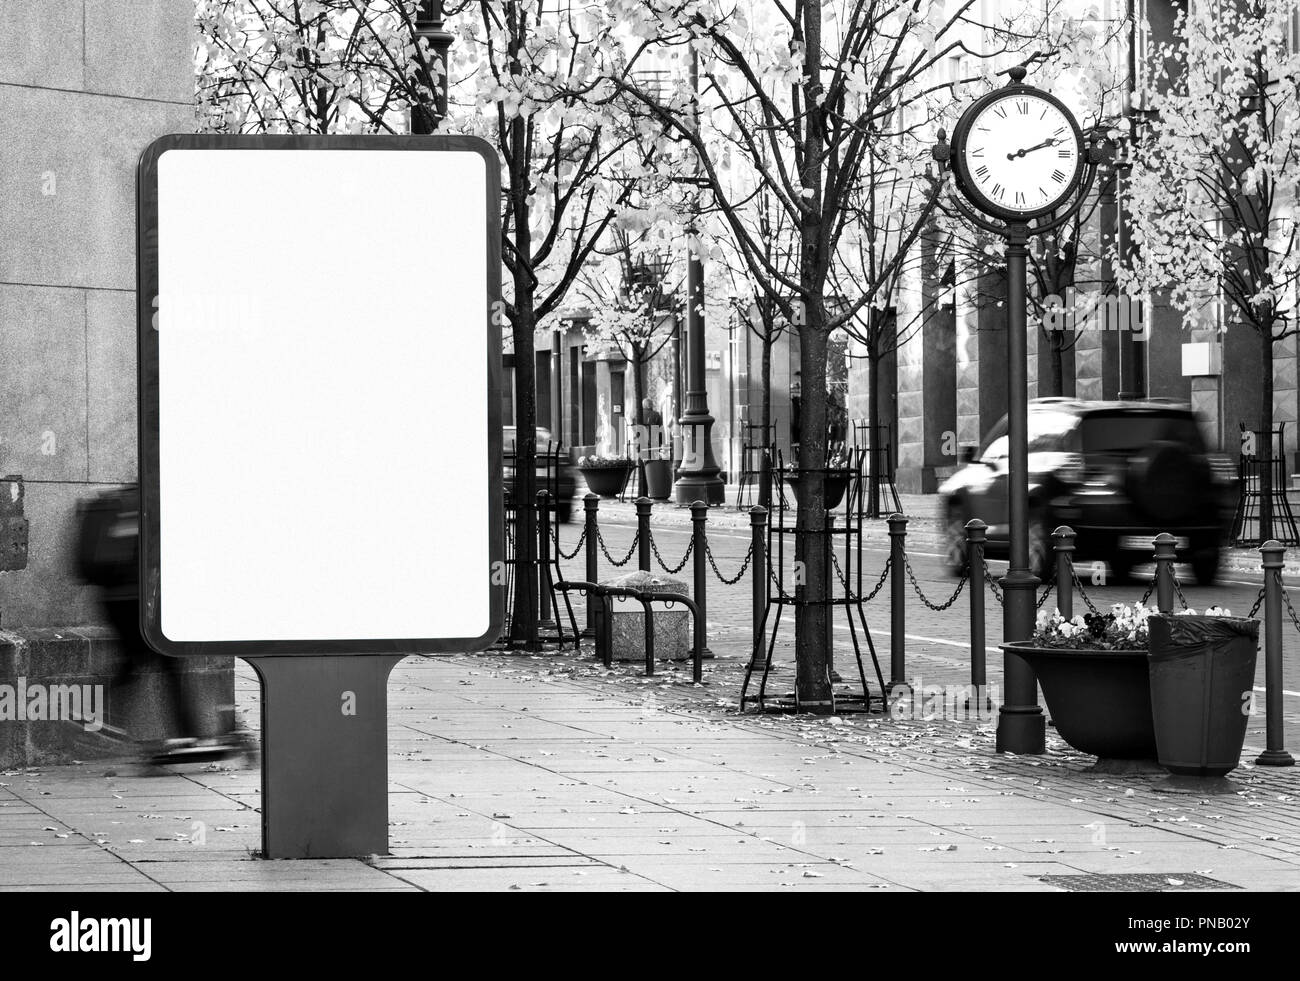 Noir et blanc à contraste élevé blanc affichage extérieur immersive on city street Banque D'Images